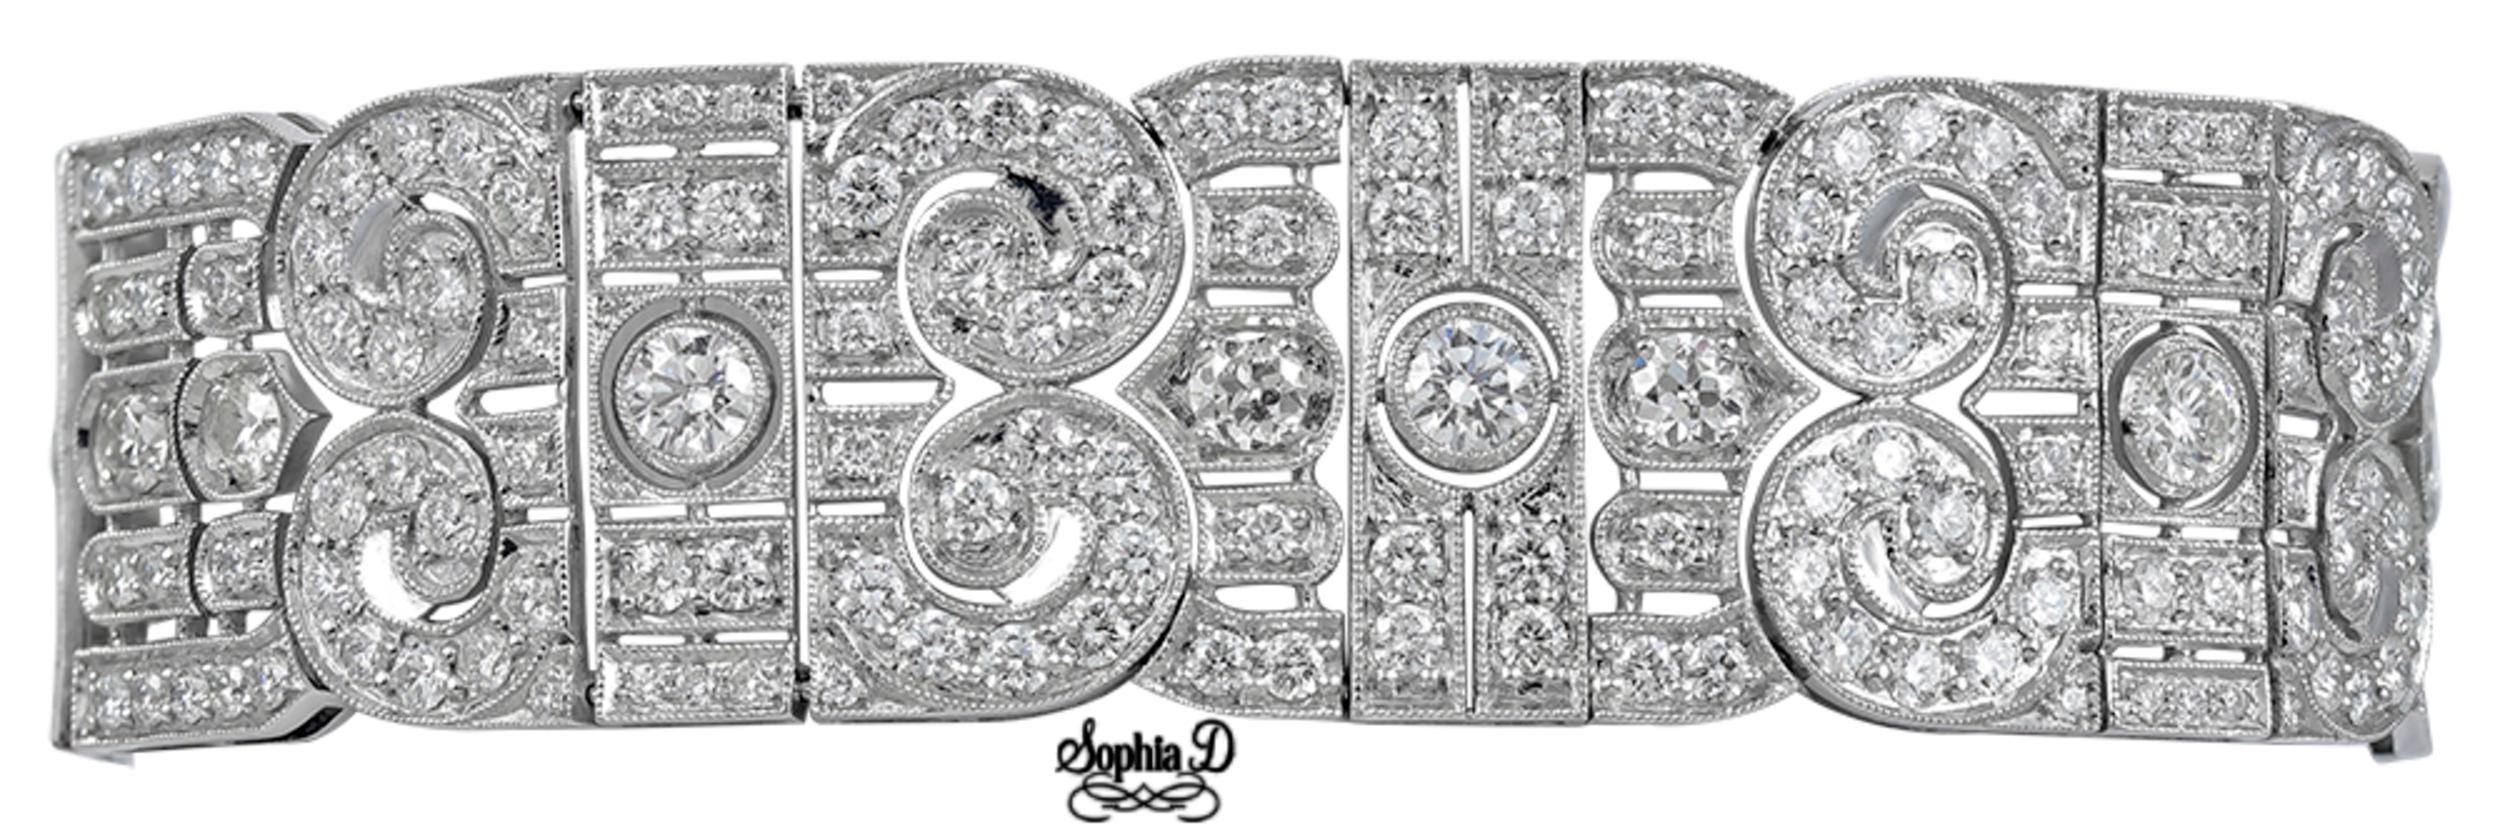 Ce magnifique bracelet conçu par Sophia/One est orné de 6 diamants ronds centraux d'un poids total de 3,74 carats, entourés de diamants ronds brillants d'un poids de 17,63 carats. 

La longueur du bracelet est de 7,5